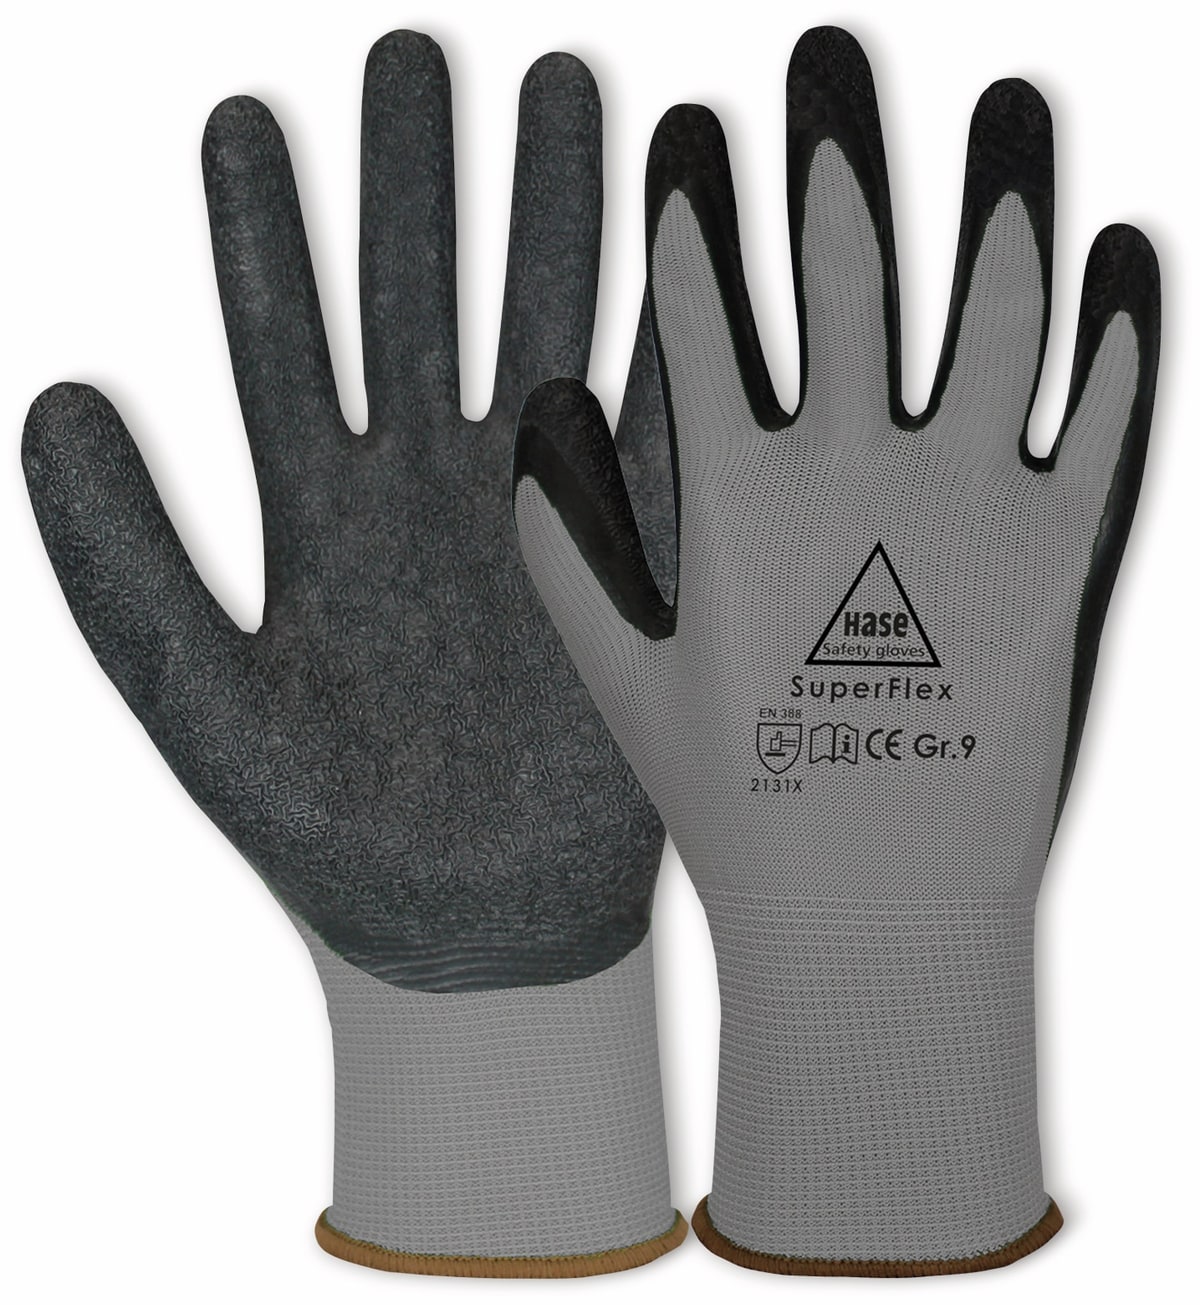 HASE SAFETY GLOVES Latex-Arbeitshandschuhe Superflex, EN 388, EN 420, Größe 6, grau/schwarz von Hase Safety gloves